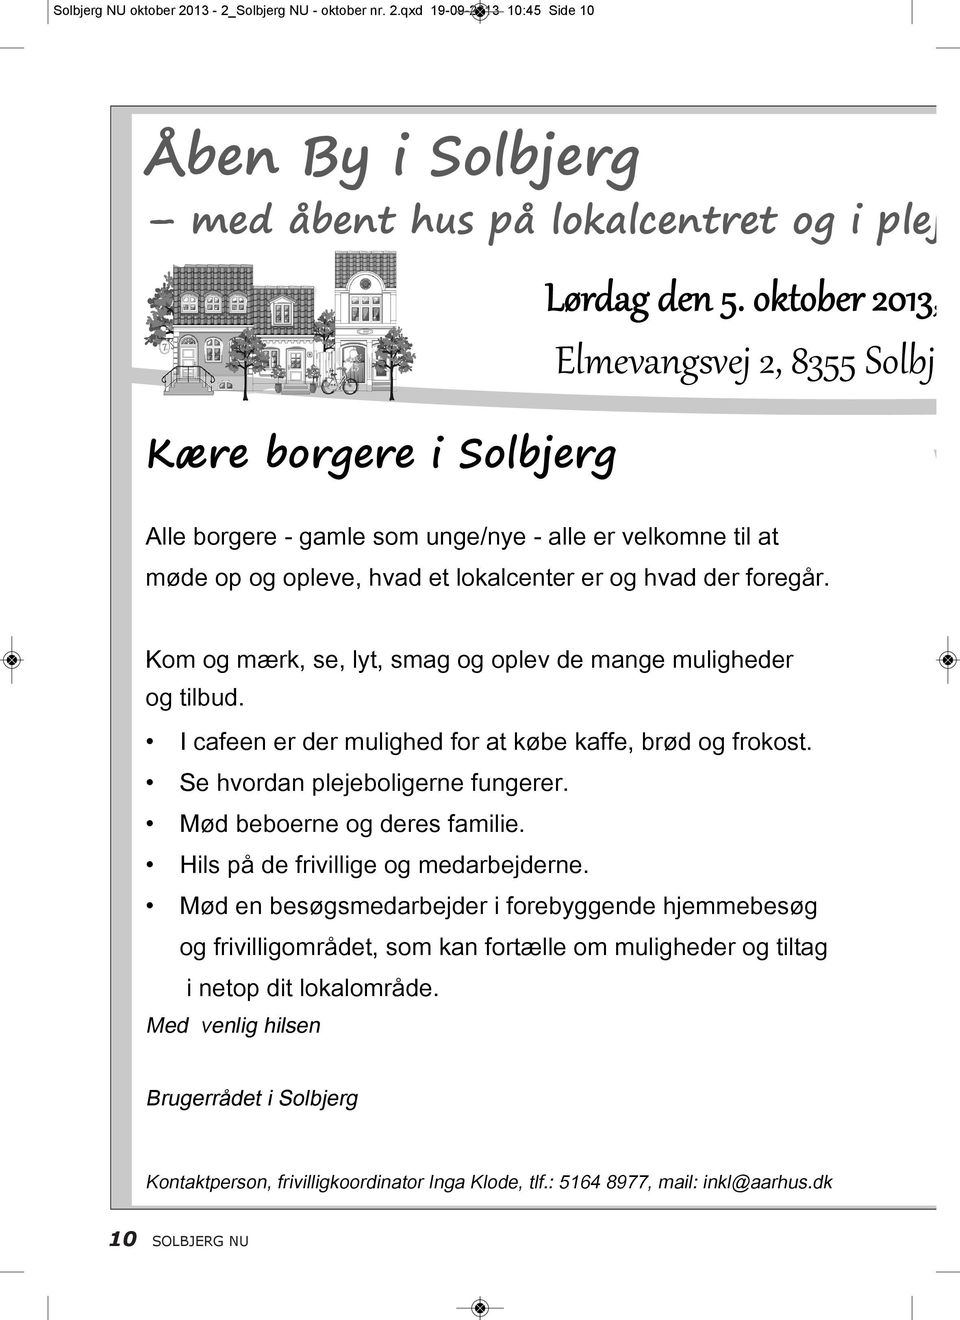 qxd 19-09-2013 10:45 Side 10 Åben By i Solbjerg med åbent hus på lokalcentret og i pleje Kære borgere i Solbjerg Alle borgere - gamle som unge/nye - alle er velkomne til at møde op og opleve, hvad et